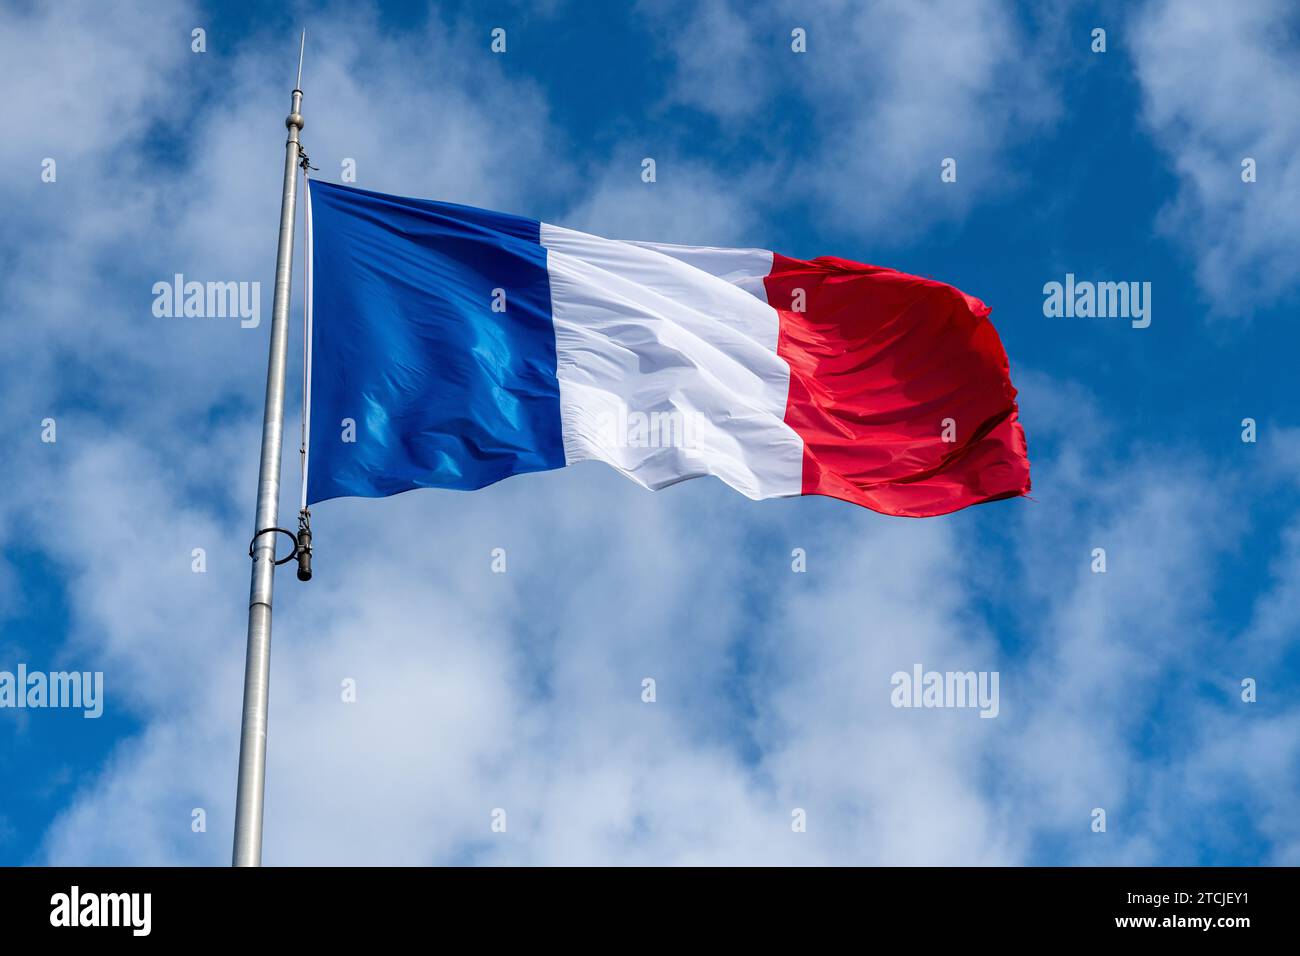 Die französische Flagge im Wind vor einem blauen Himmel mit Schleierwolken und einem wunderschönen Licht. Die Flagge hat die Farbe blau weiß und rot Stockfoto